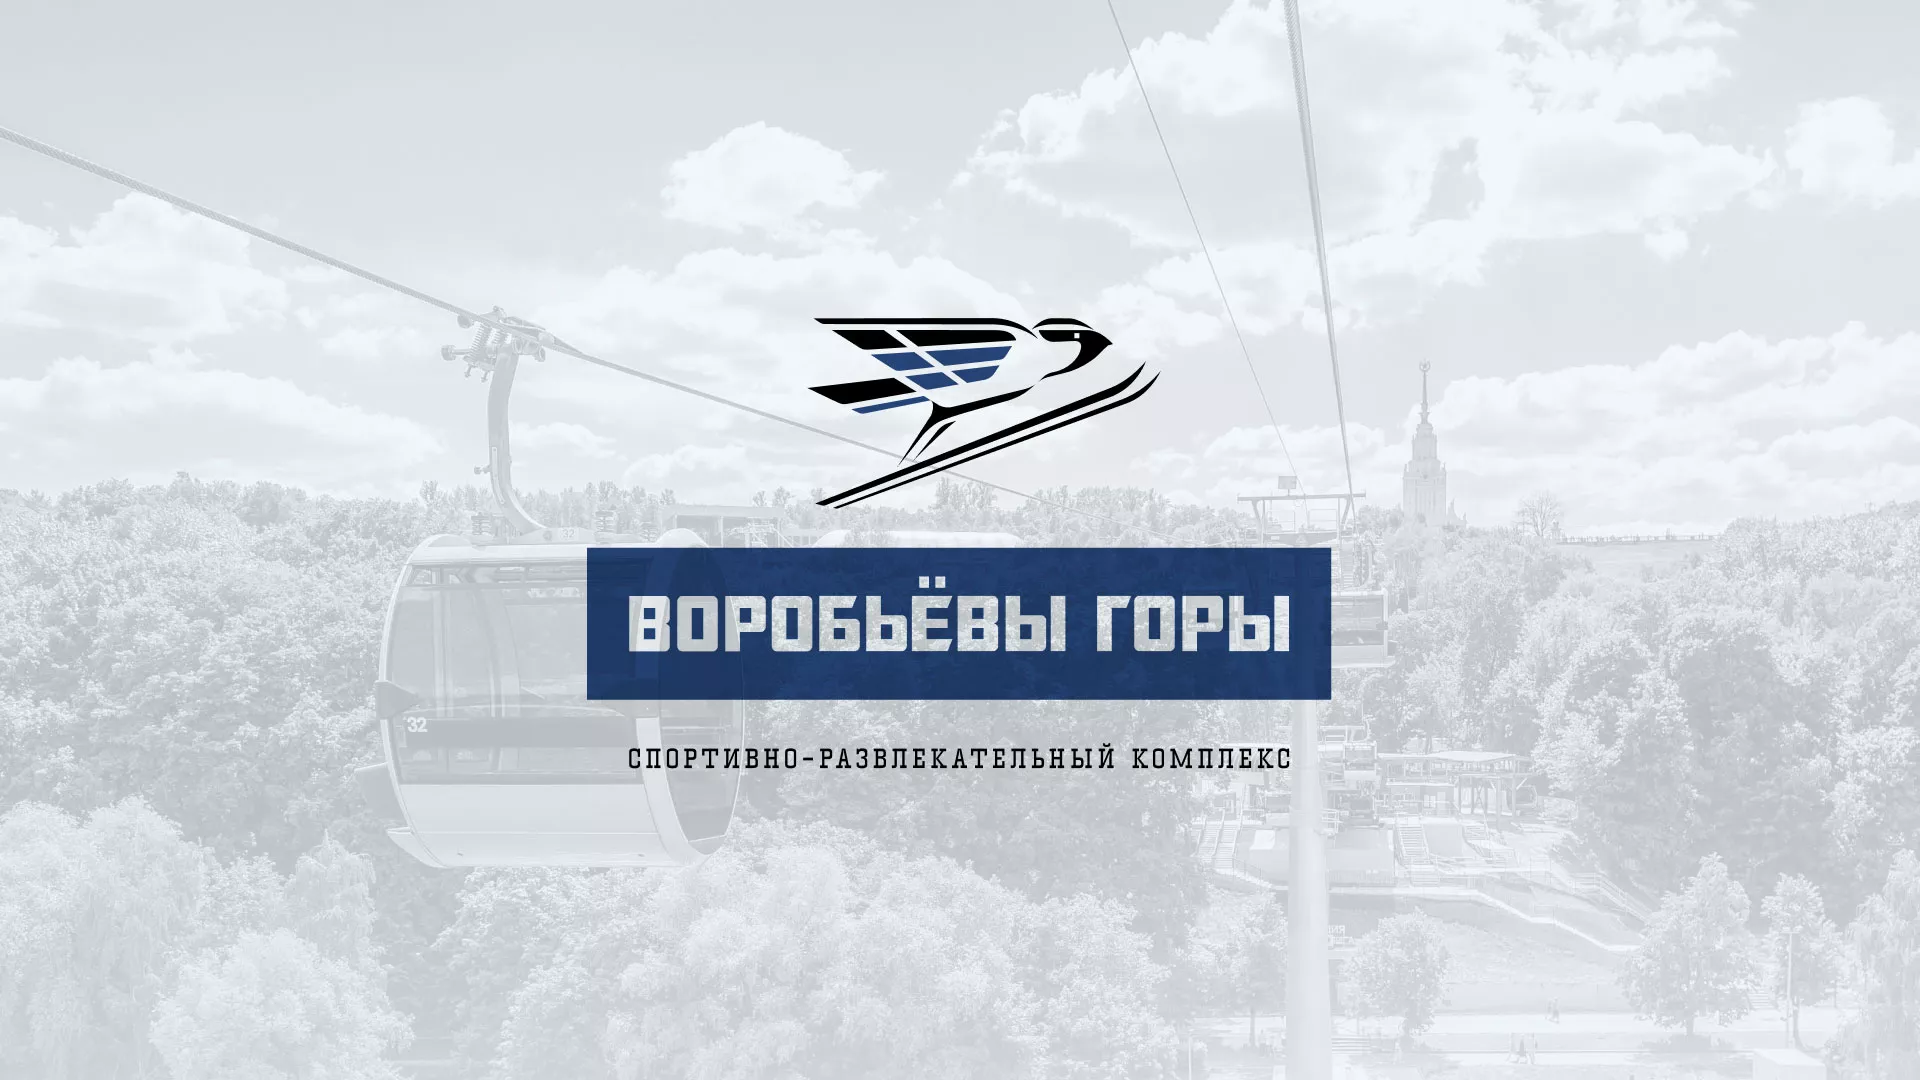 Разработка сайта в Николаевске-на-Амуре для спортивно-развлекательного комплекса «Воробьёвы горы»